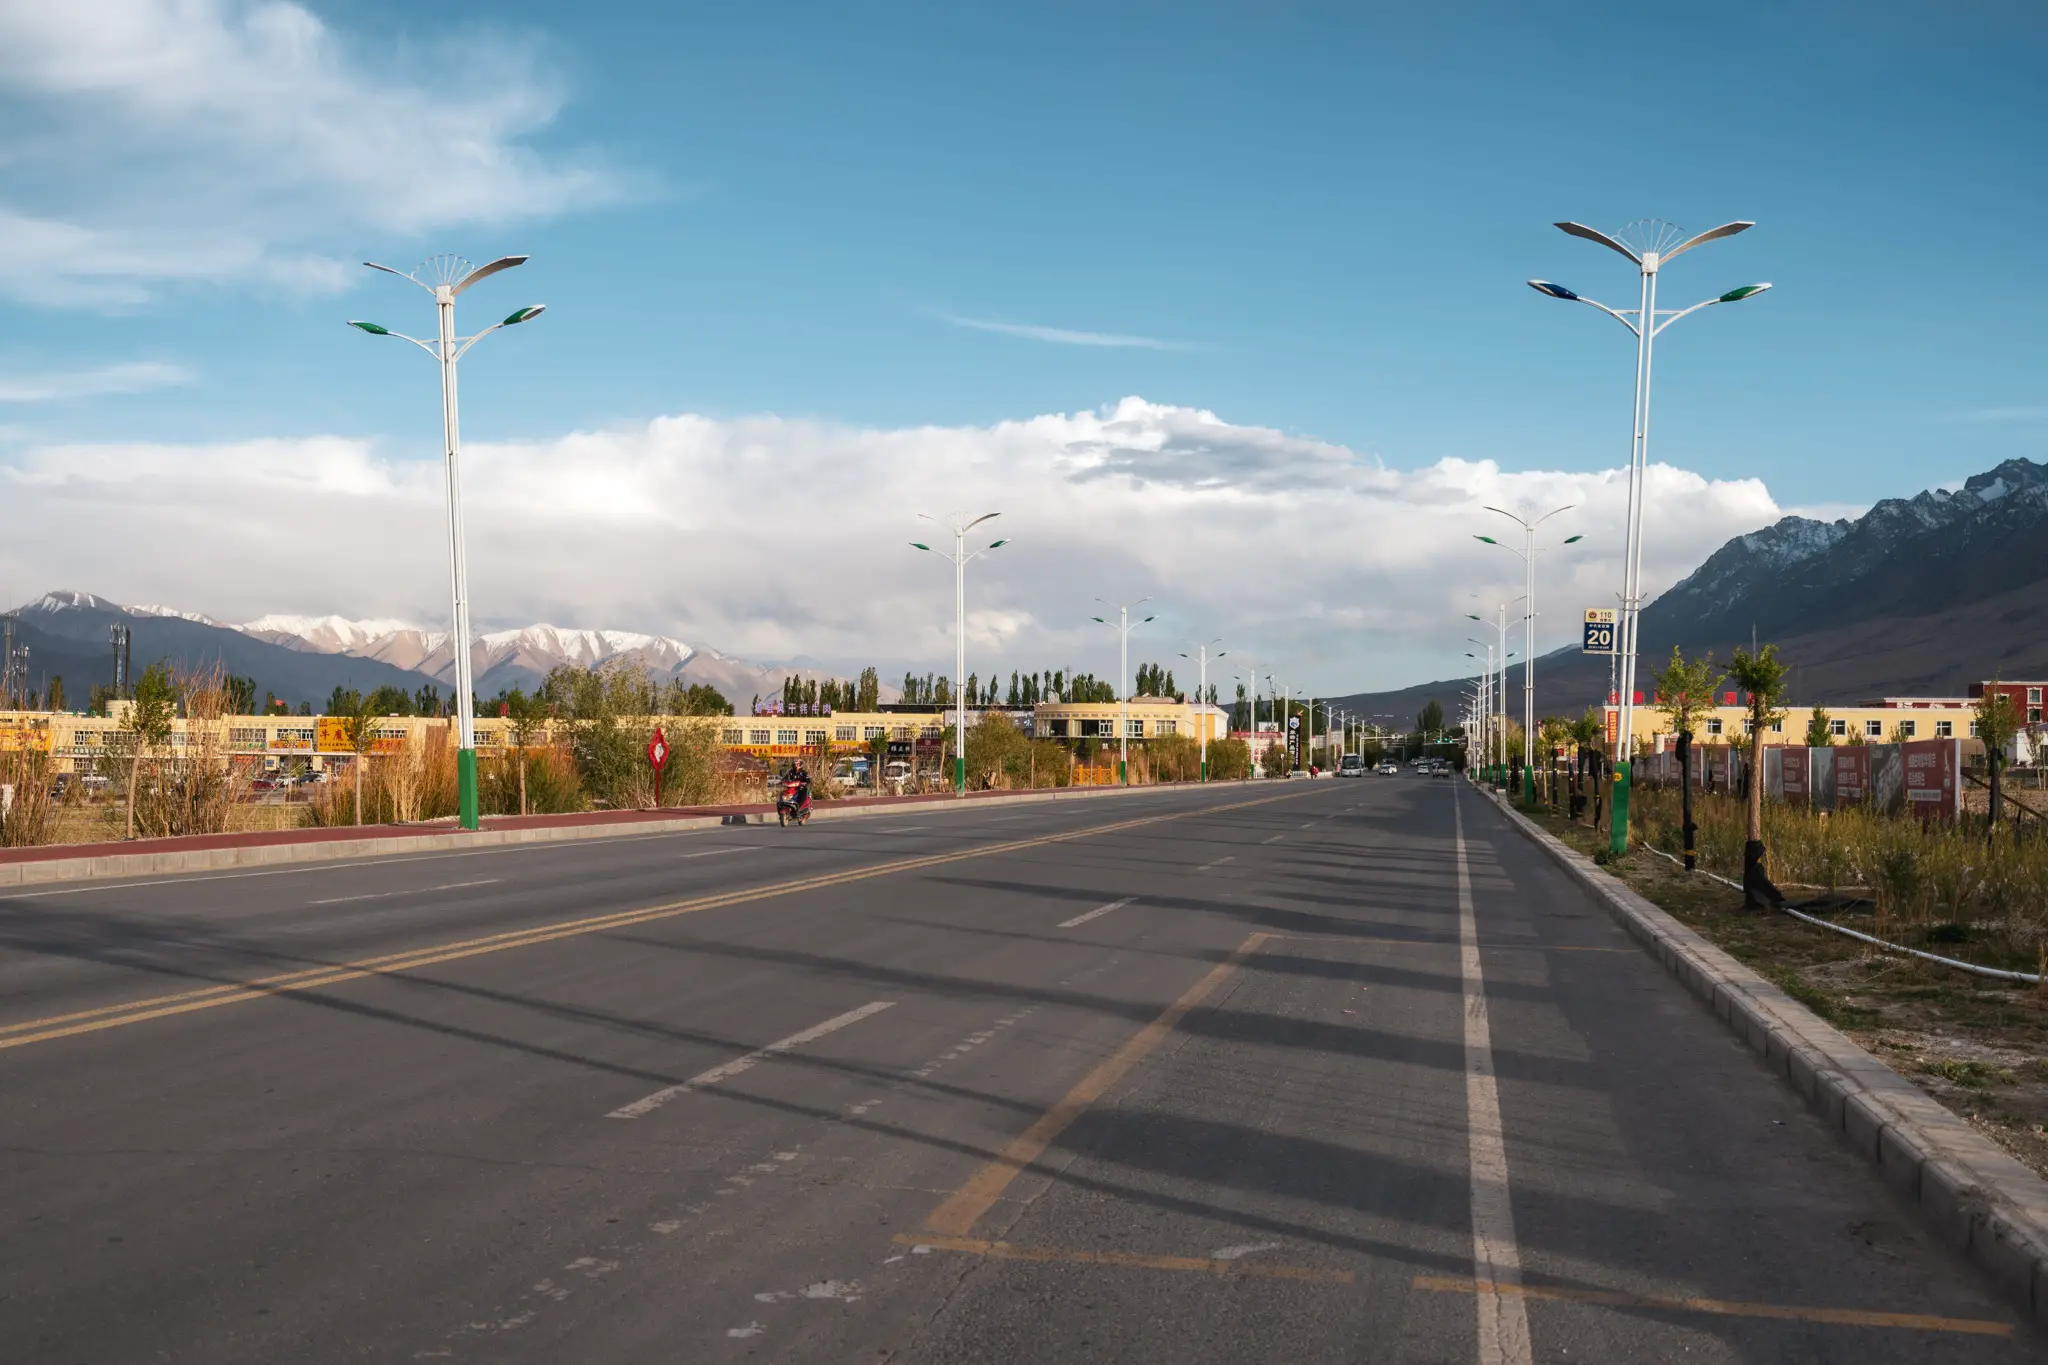 Streets of Tashkurgan, Xinjiang